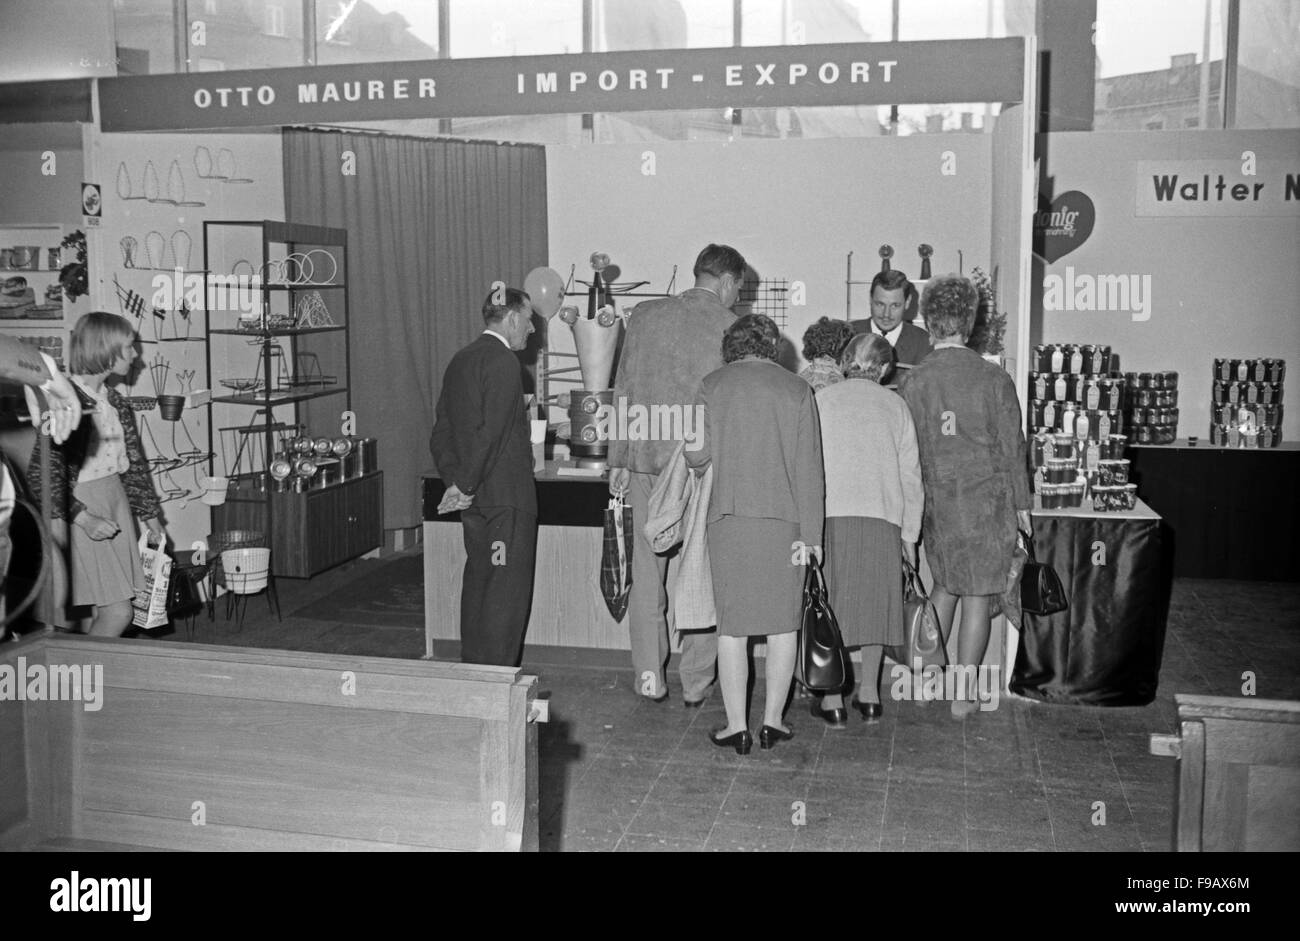 Messestand der Otto Maurer Import Export Handelsgesellschaft auf einer Hausmesse à München, Deutschland 1960 er Jahre. Stand de Otto Maurer l'importation et de l'exportation l'entreprise au cours d'une foire commerciale de Munich, Allemagne 1960. 24x36 swNeg311 Banque D'Images